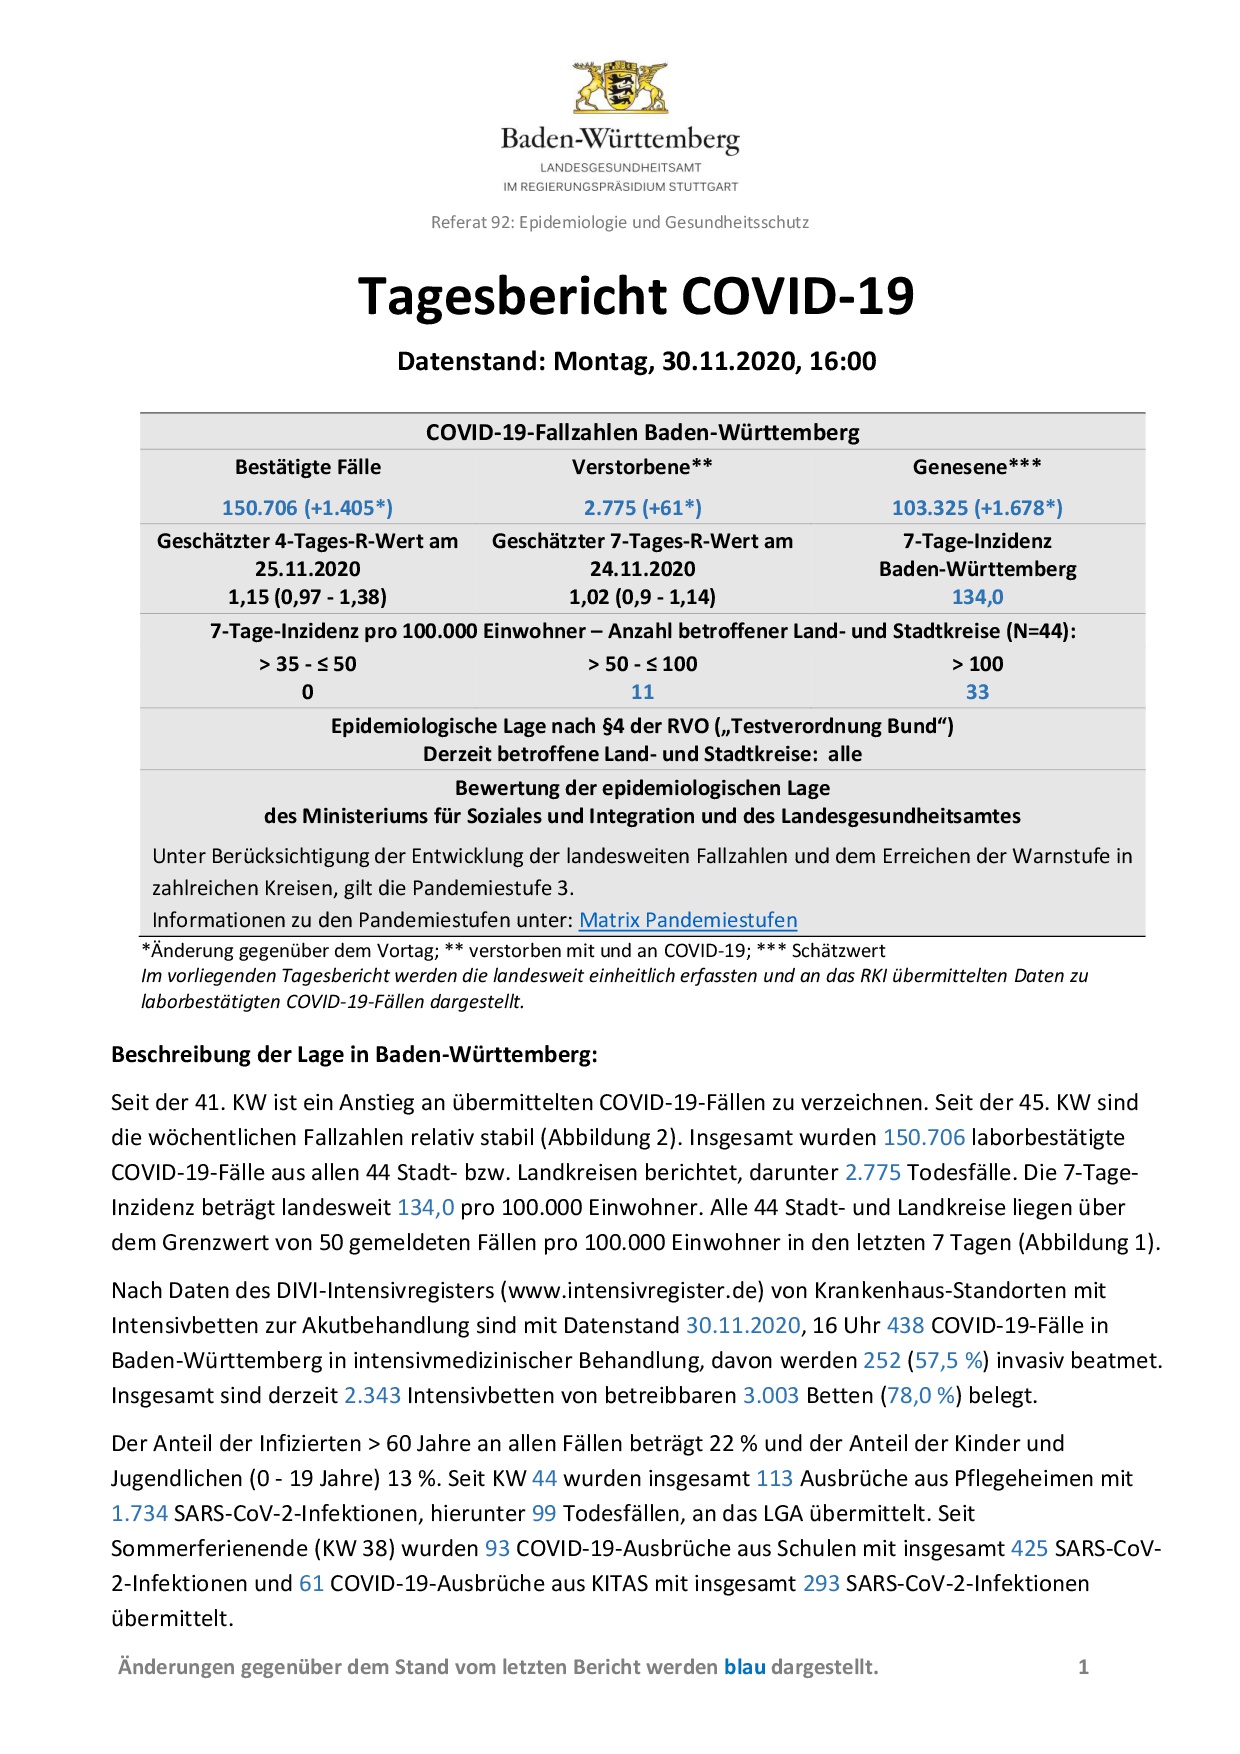 COVID-19 Tagesbericht (30.11.2020) des Landesgesundheitsamts Baden-Württemberg – (ausführlicher)